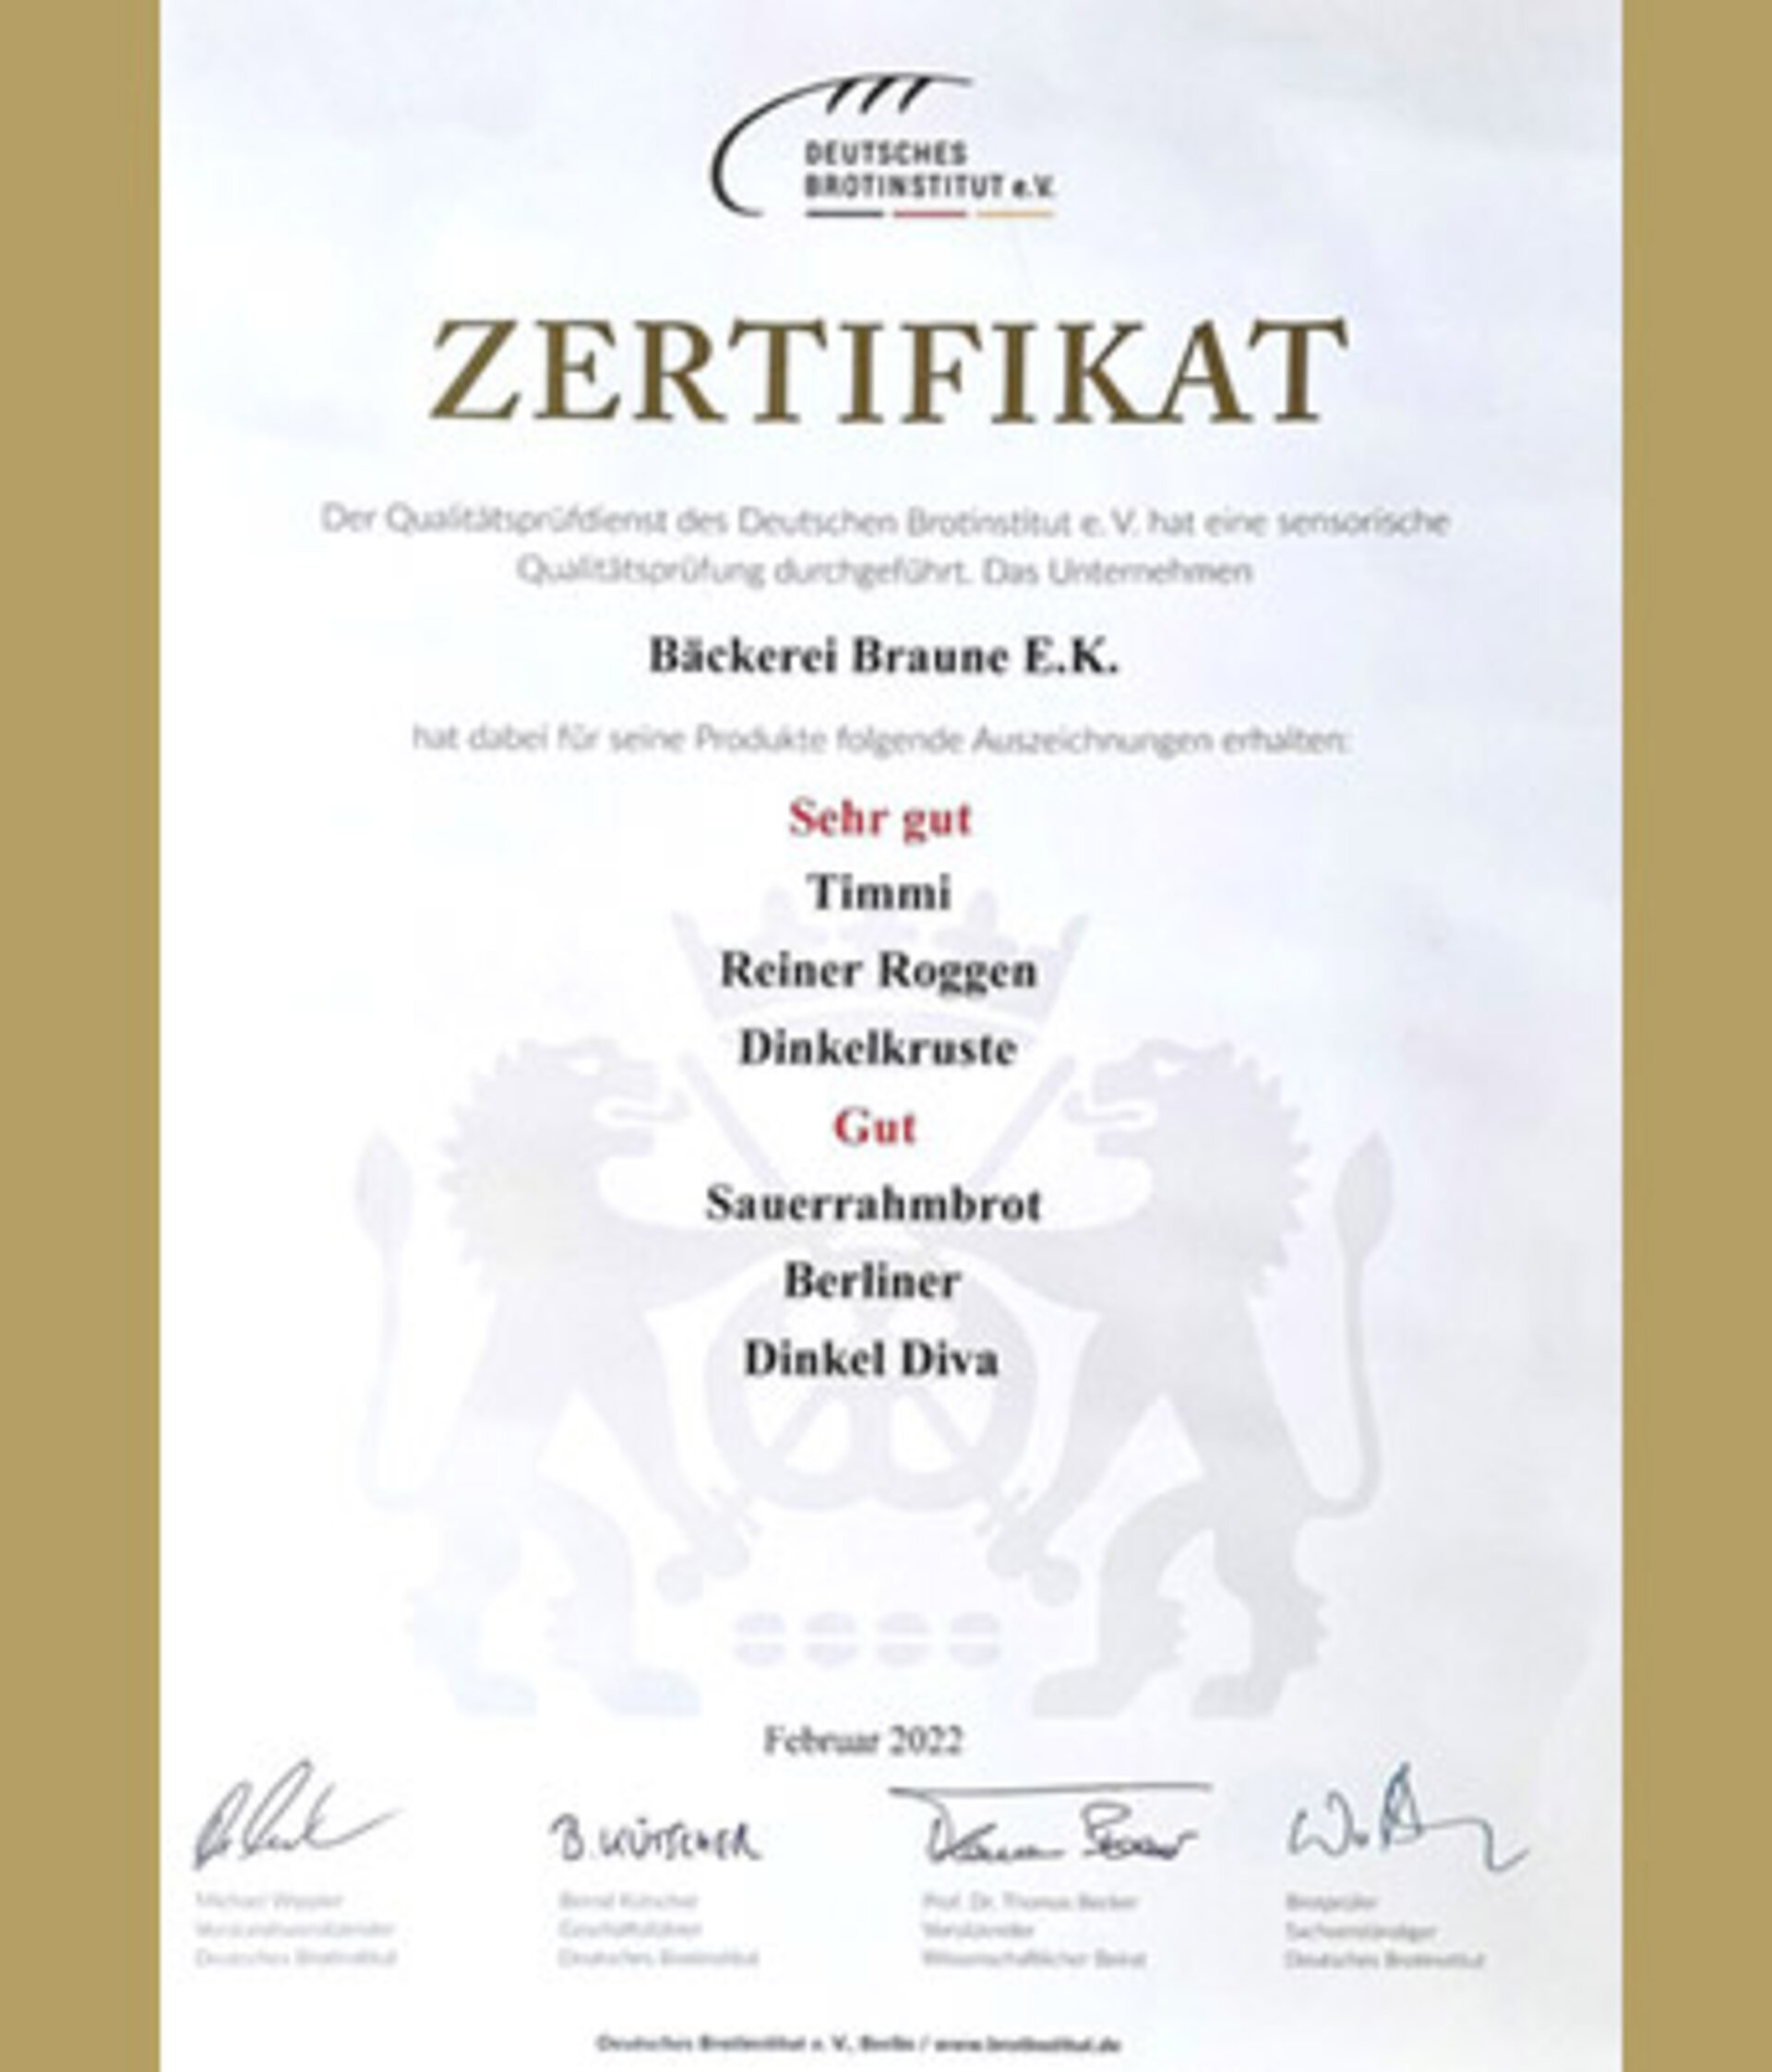 Zertifikat Deutsches Brotinsttut